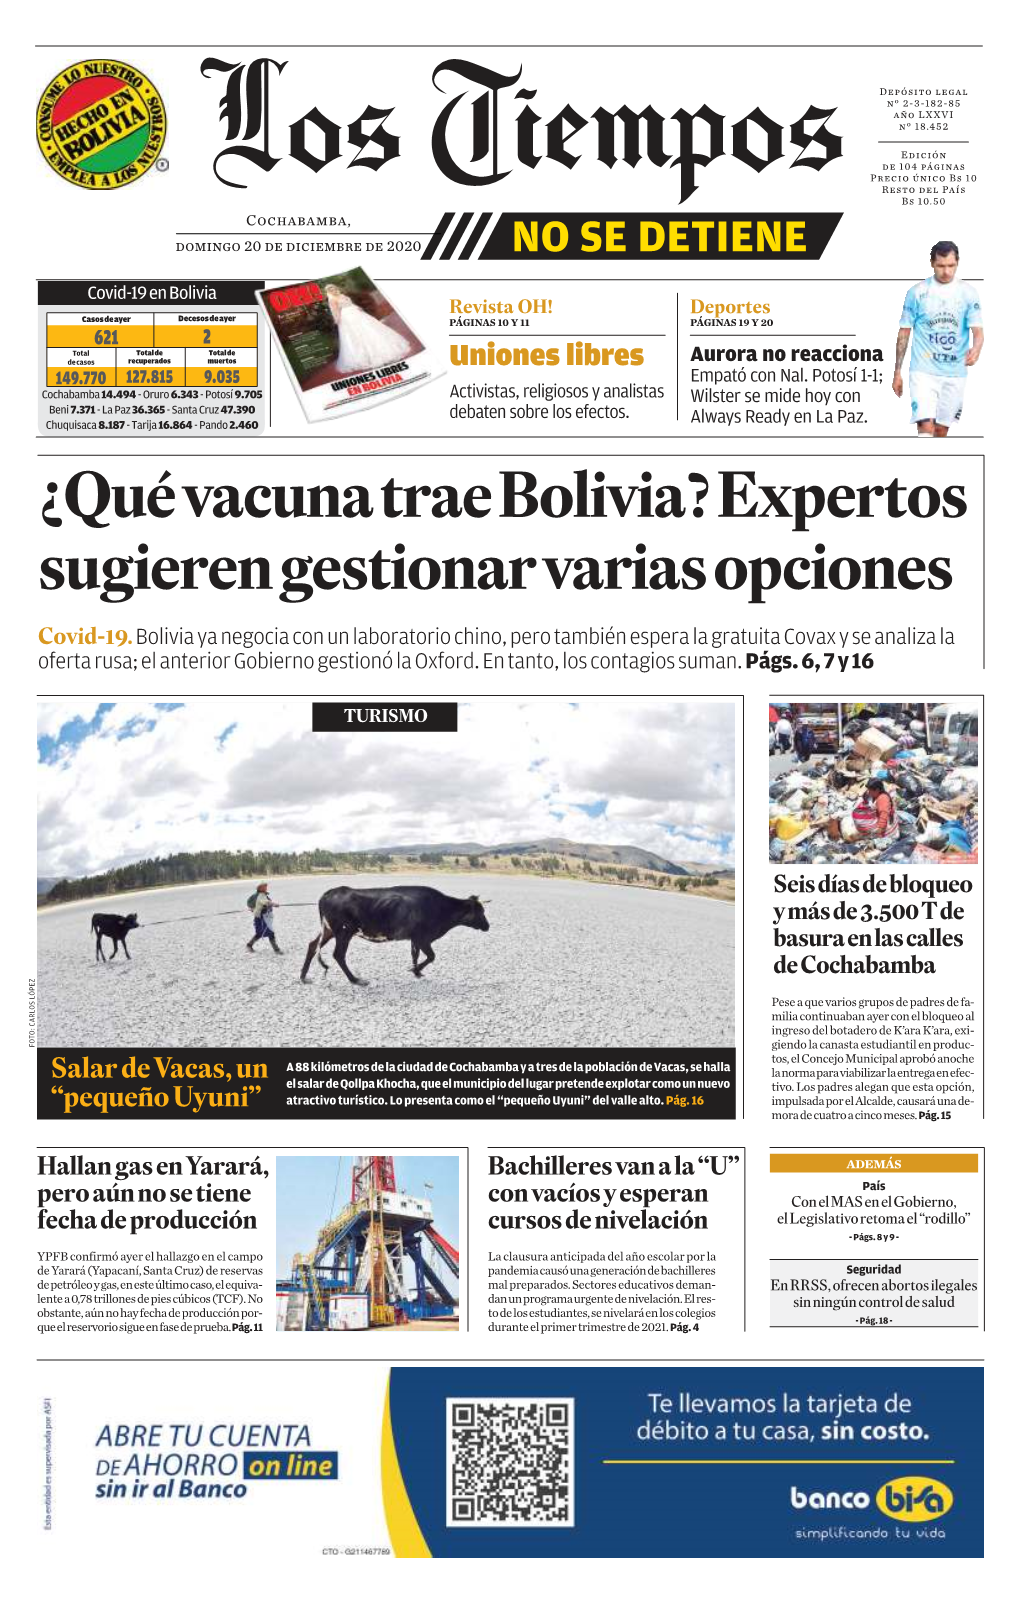 ¿Qué Vacuna Trae Bolivia? Expertos Sugieren Gestionar Varias Opciones Covid-19